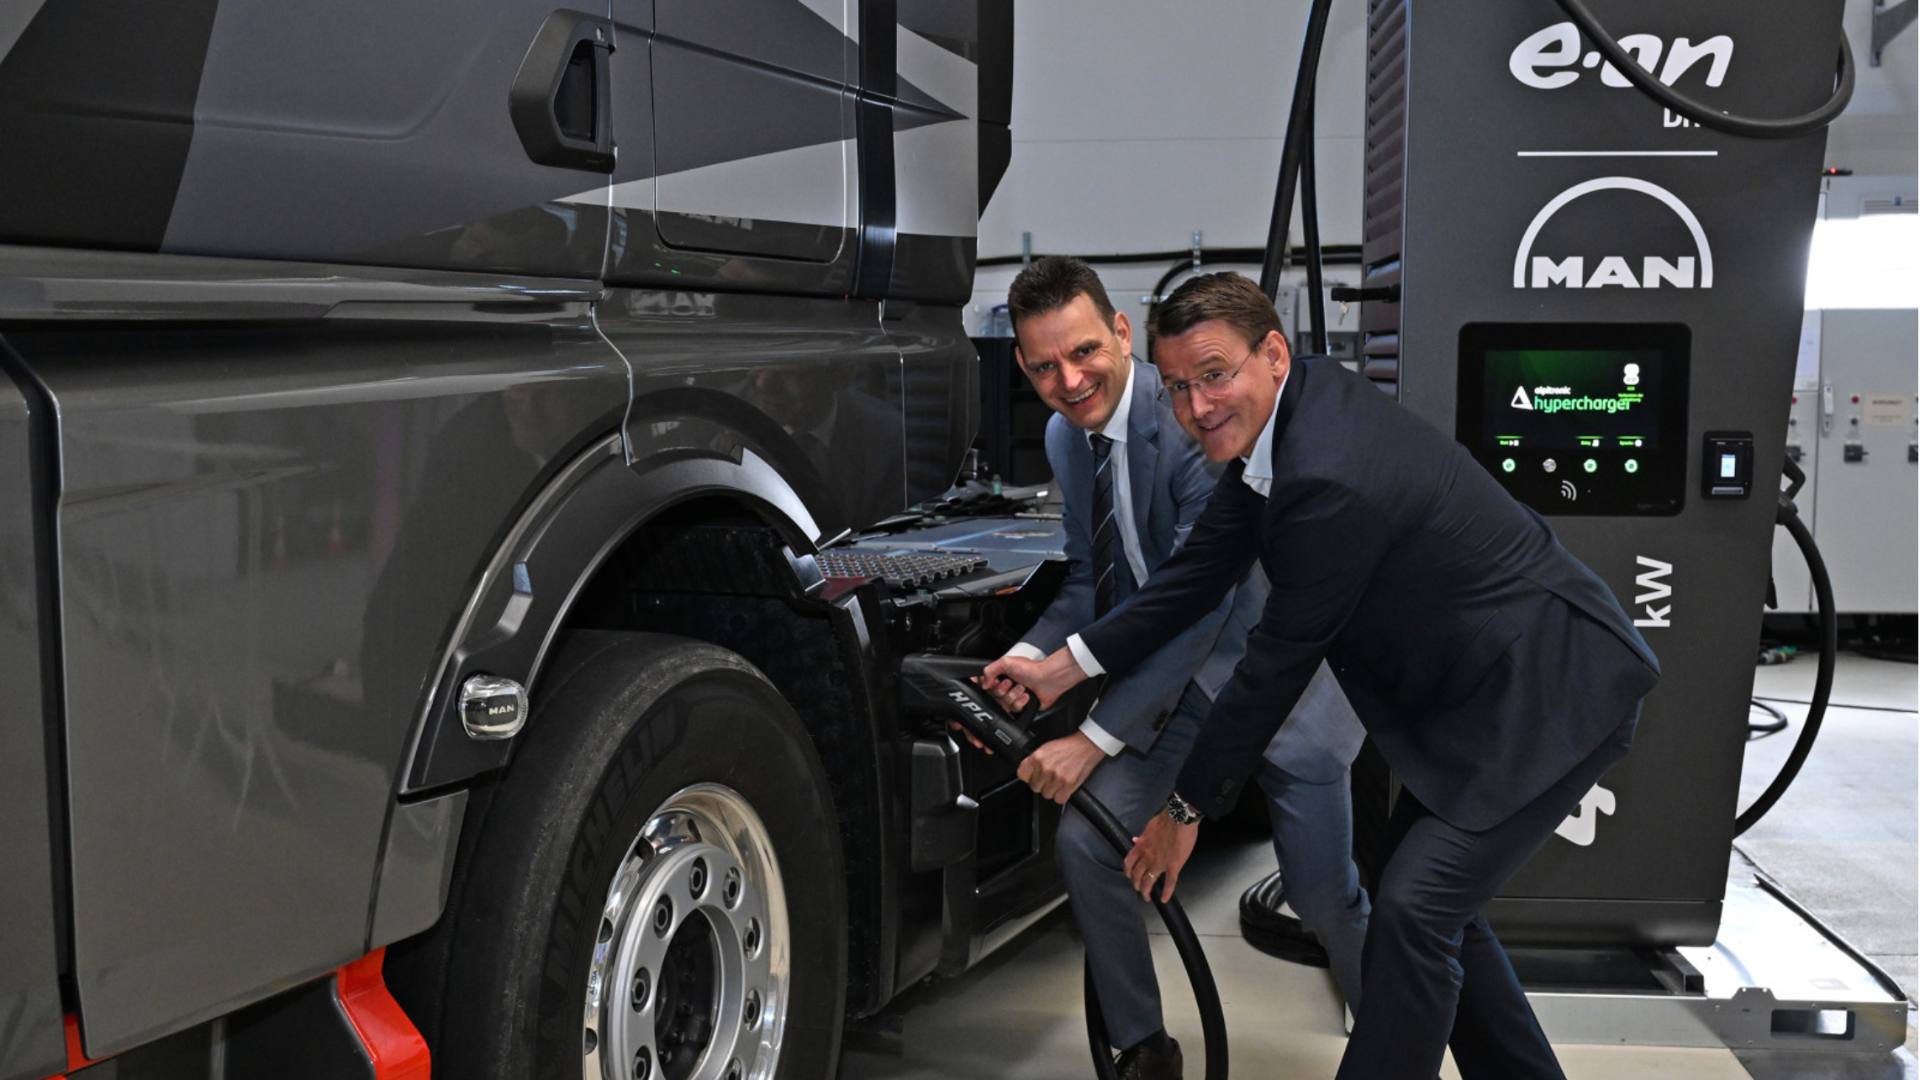 E.ON en MAN bouwen openbaar oplaadnetwerk voor elektrische vrachtwagens in Europa